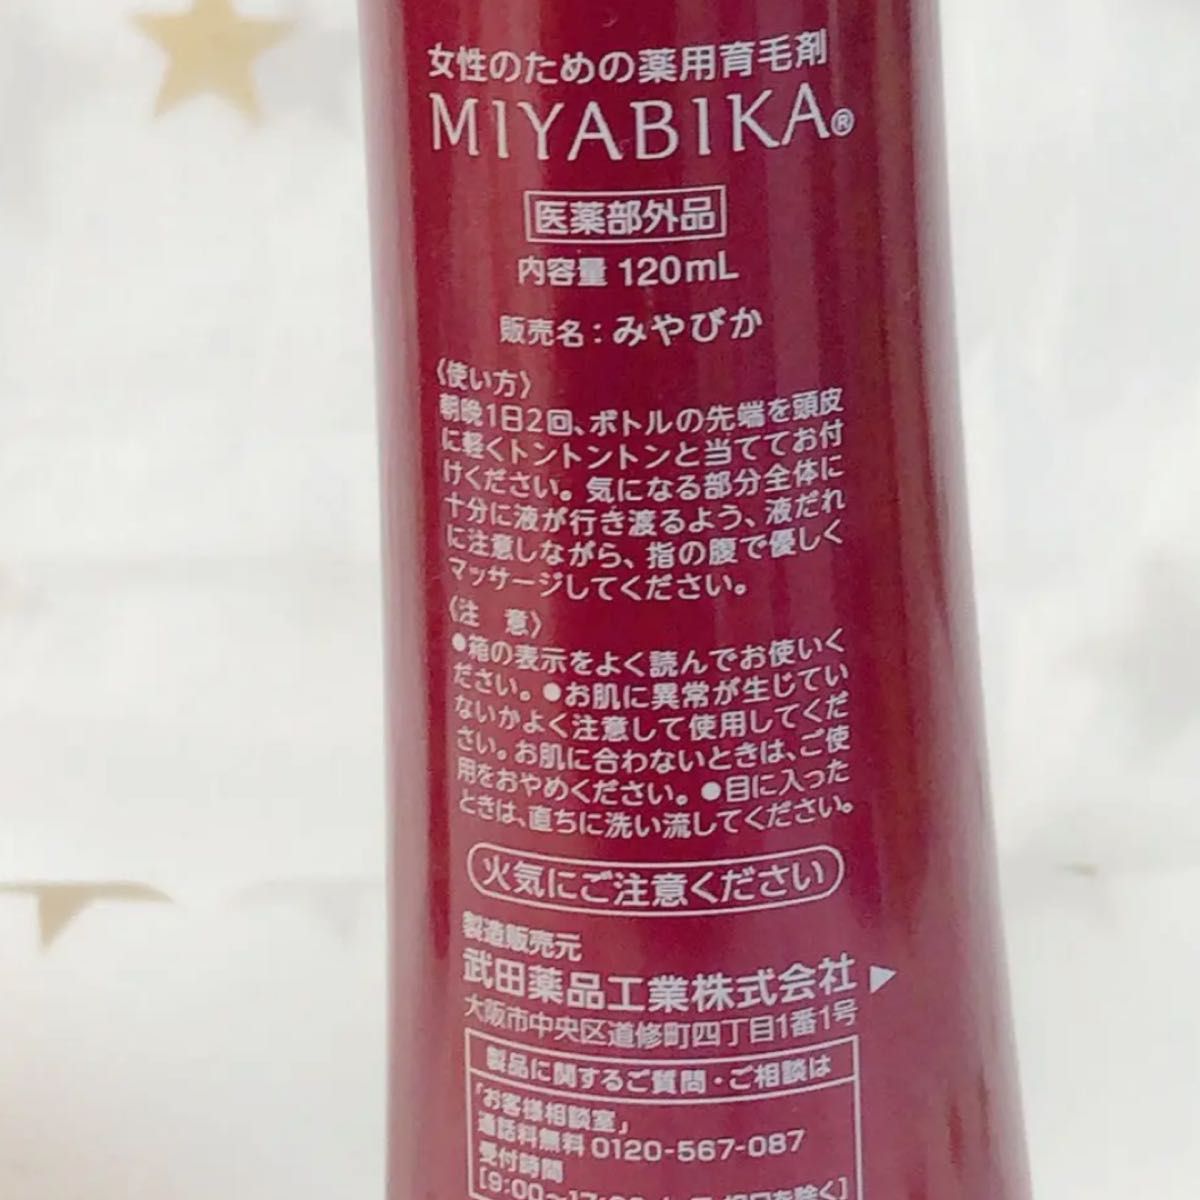 2015/ みやびかa  MIYABIKA 薬用育毛剤 120ml 2本セット